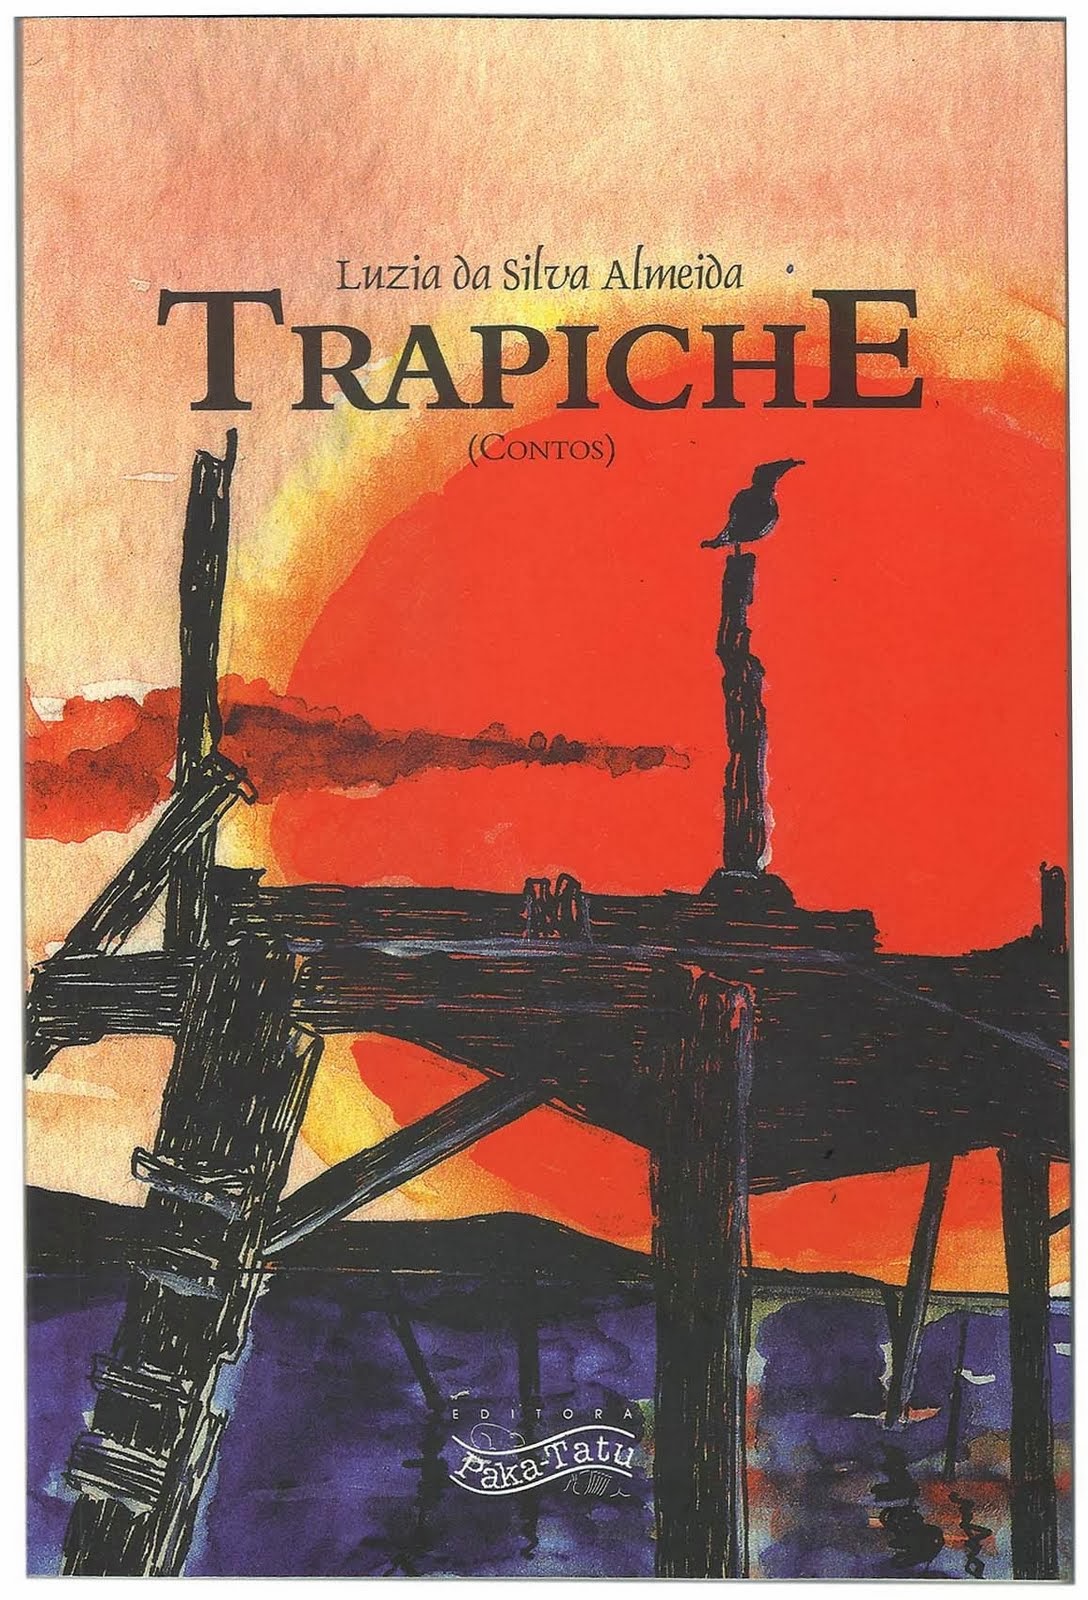 Trapiche - 2011